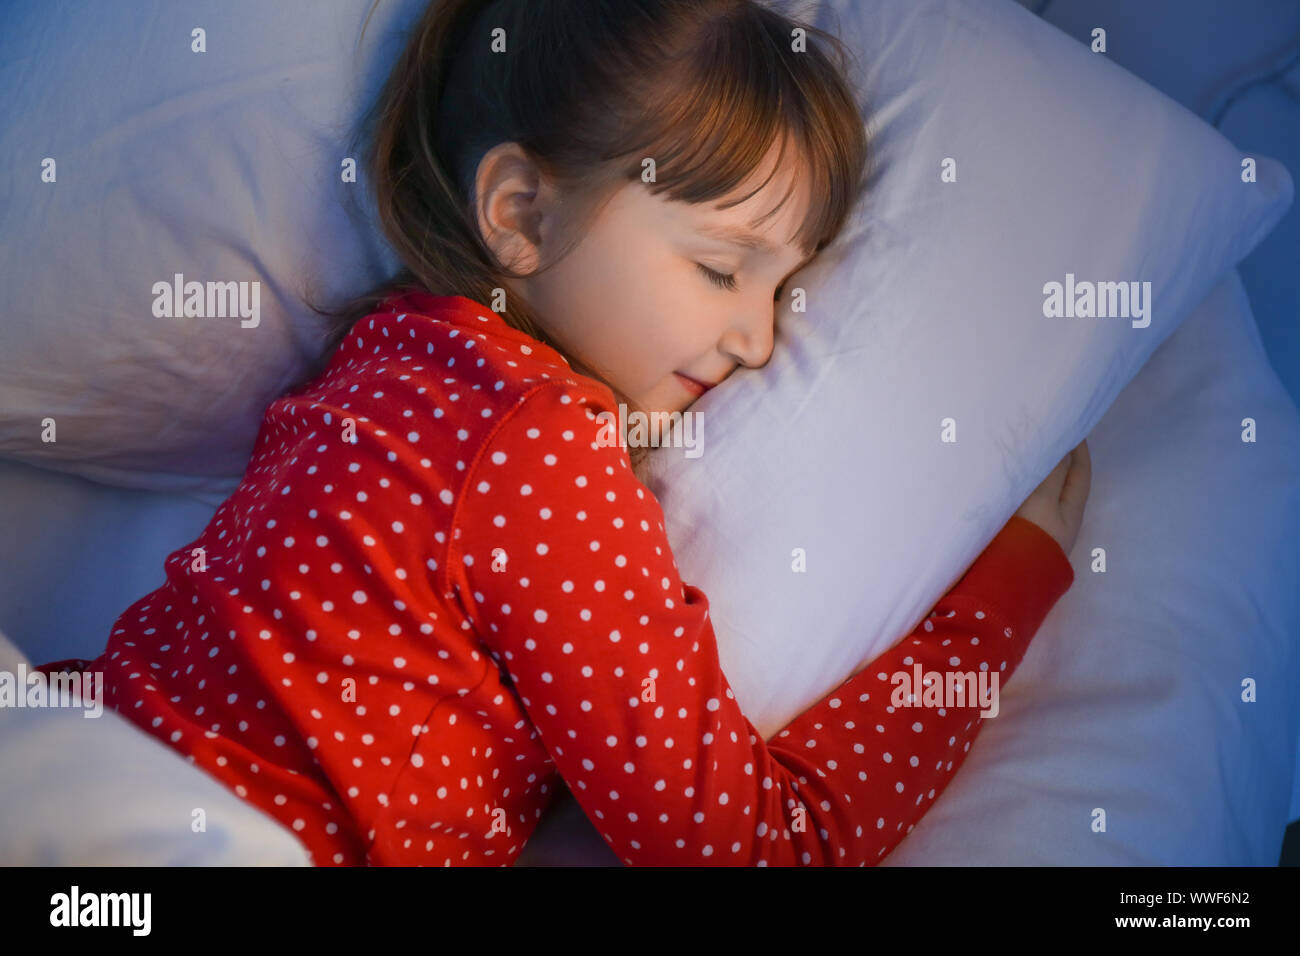 Süße kleine Mädchen schlafen nachts im Bett Stockfotografie - Alamy